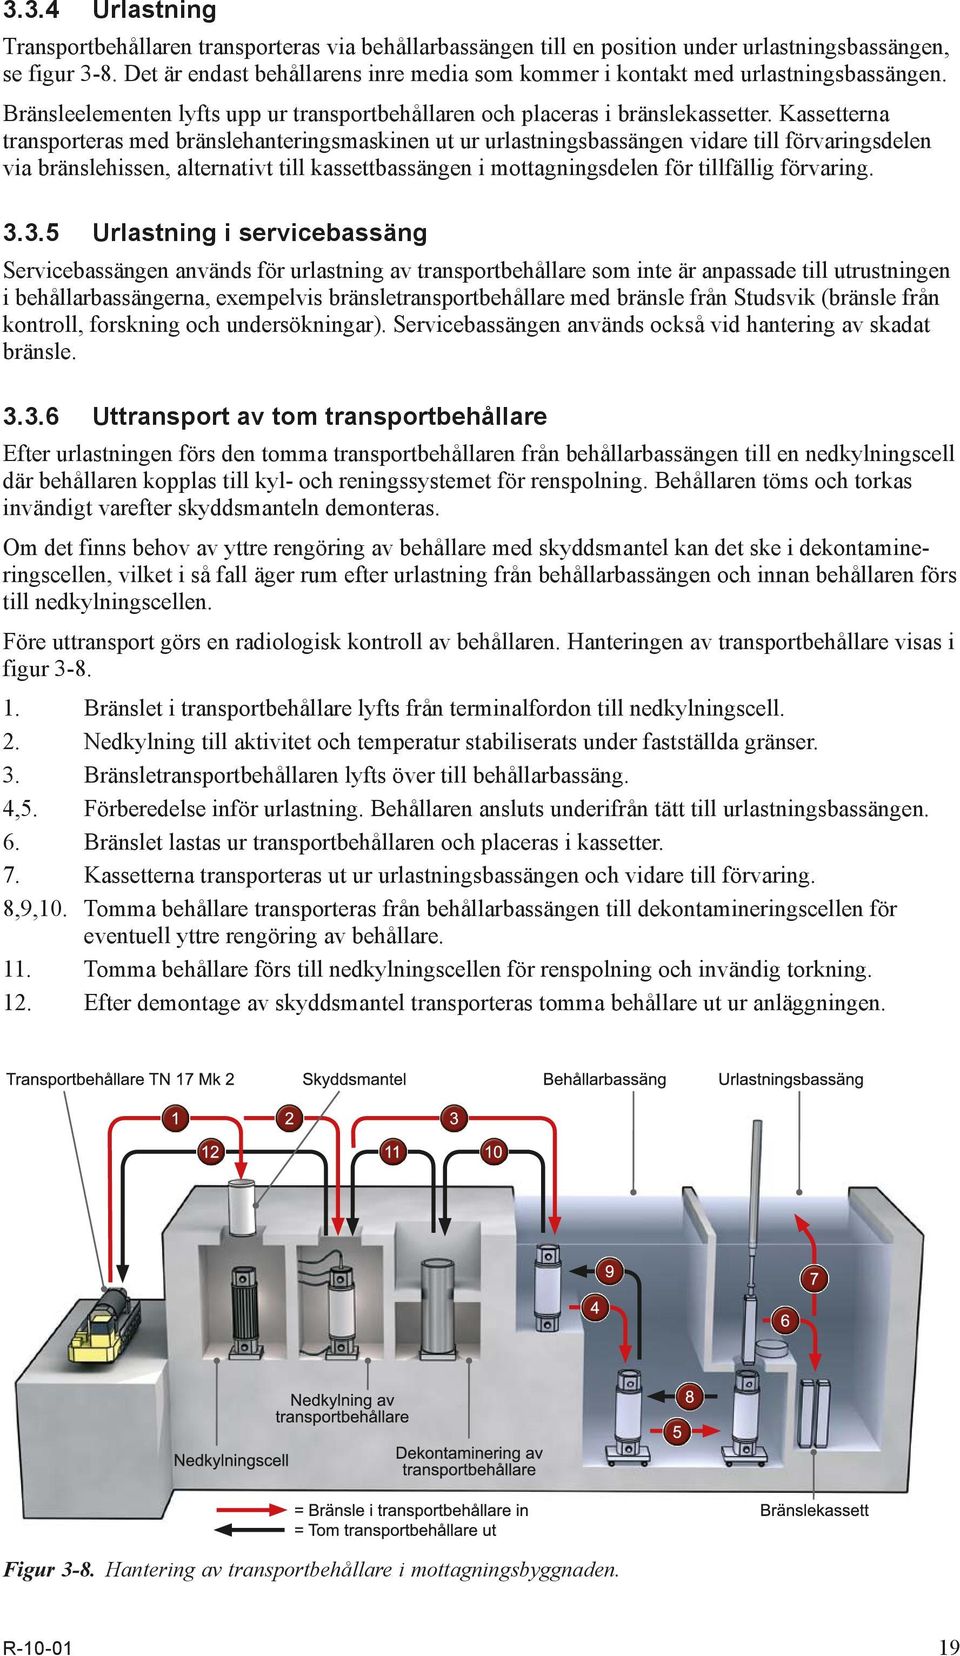 Kassetterna trans porteras med bränslehanteringsmaskinen ut ur urlastningsbassängen vidare till förvaringsdelen via bränsle hissen, alternativt till kassettbassängen i mottagningsdelen för tillfällig